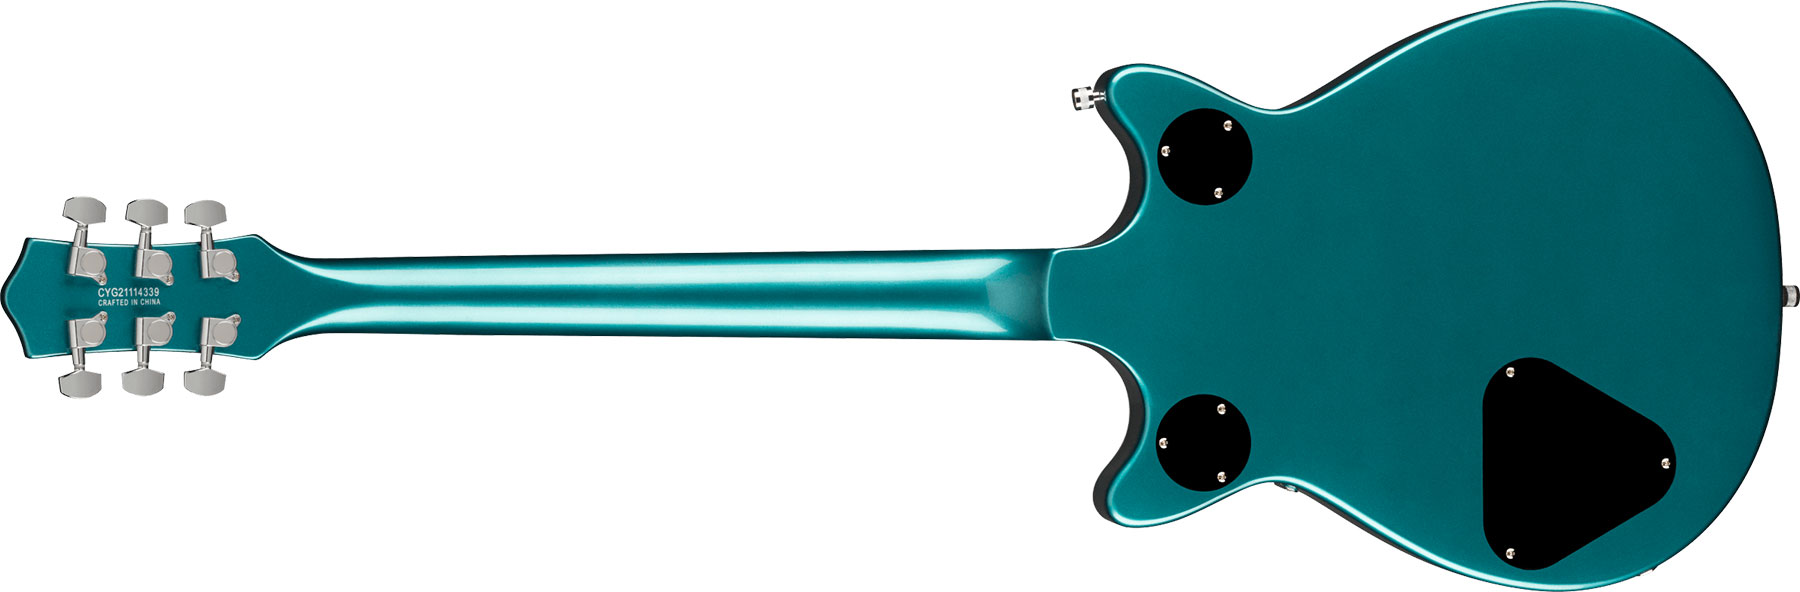 Gretsch G5222 Electromatic Double Jet Bt V-stoptail Hh Ht Lau - Ocean Turquoise - Guitarra eléctrica de doble corte - Variation 1